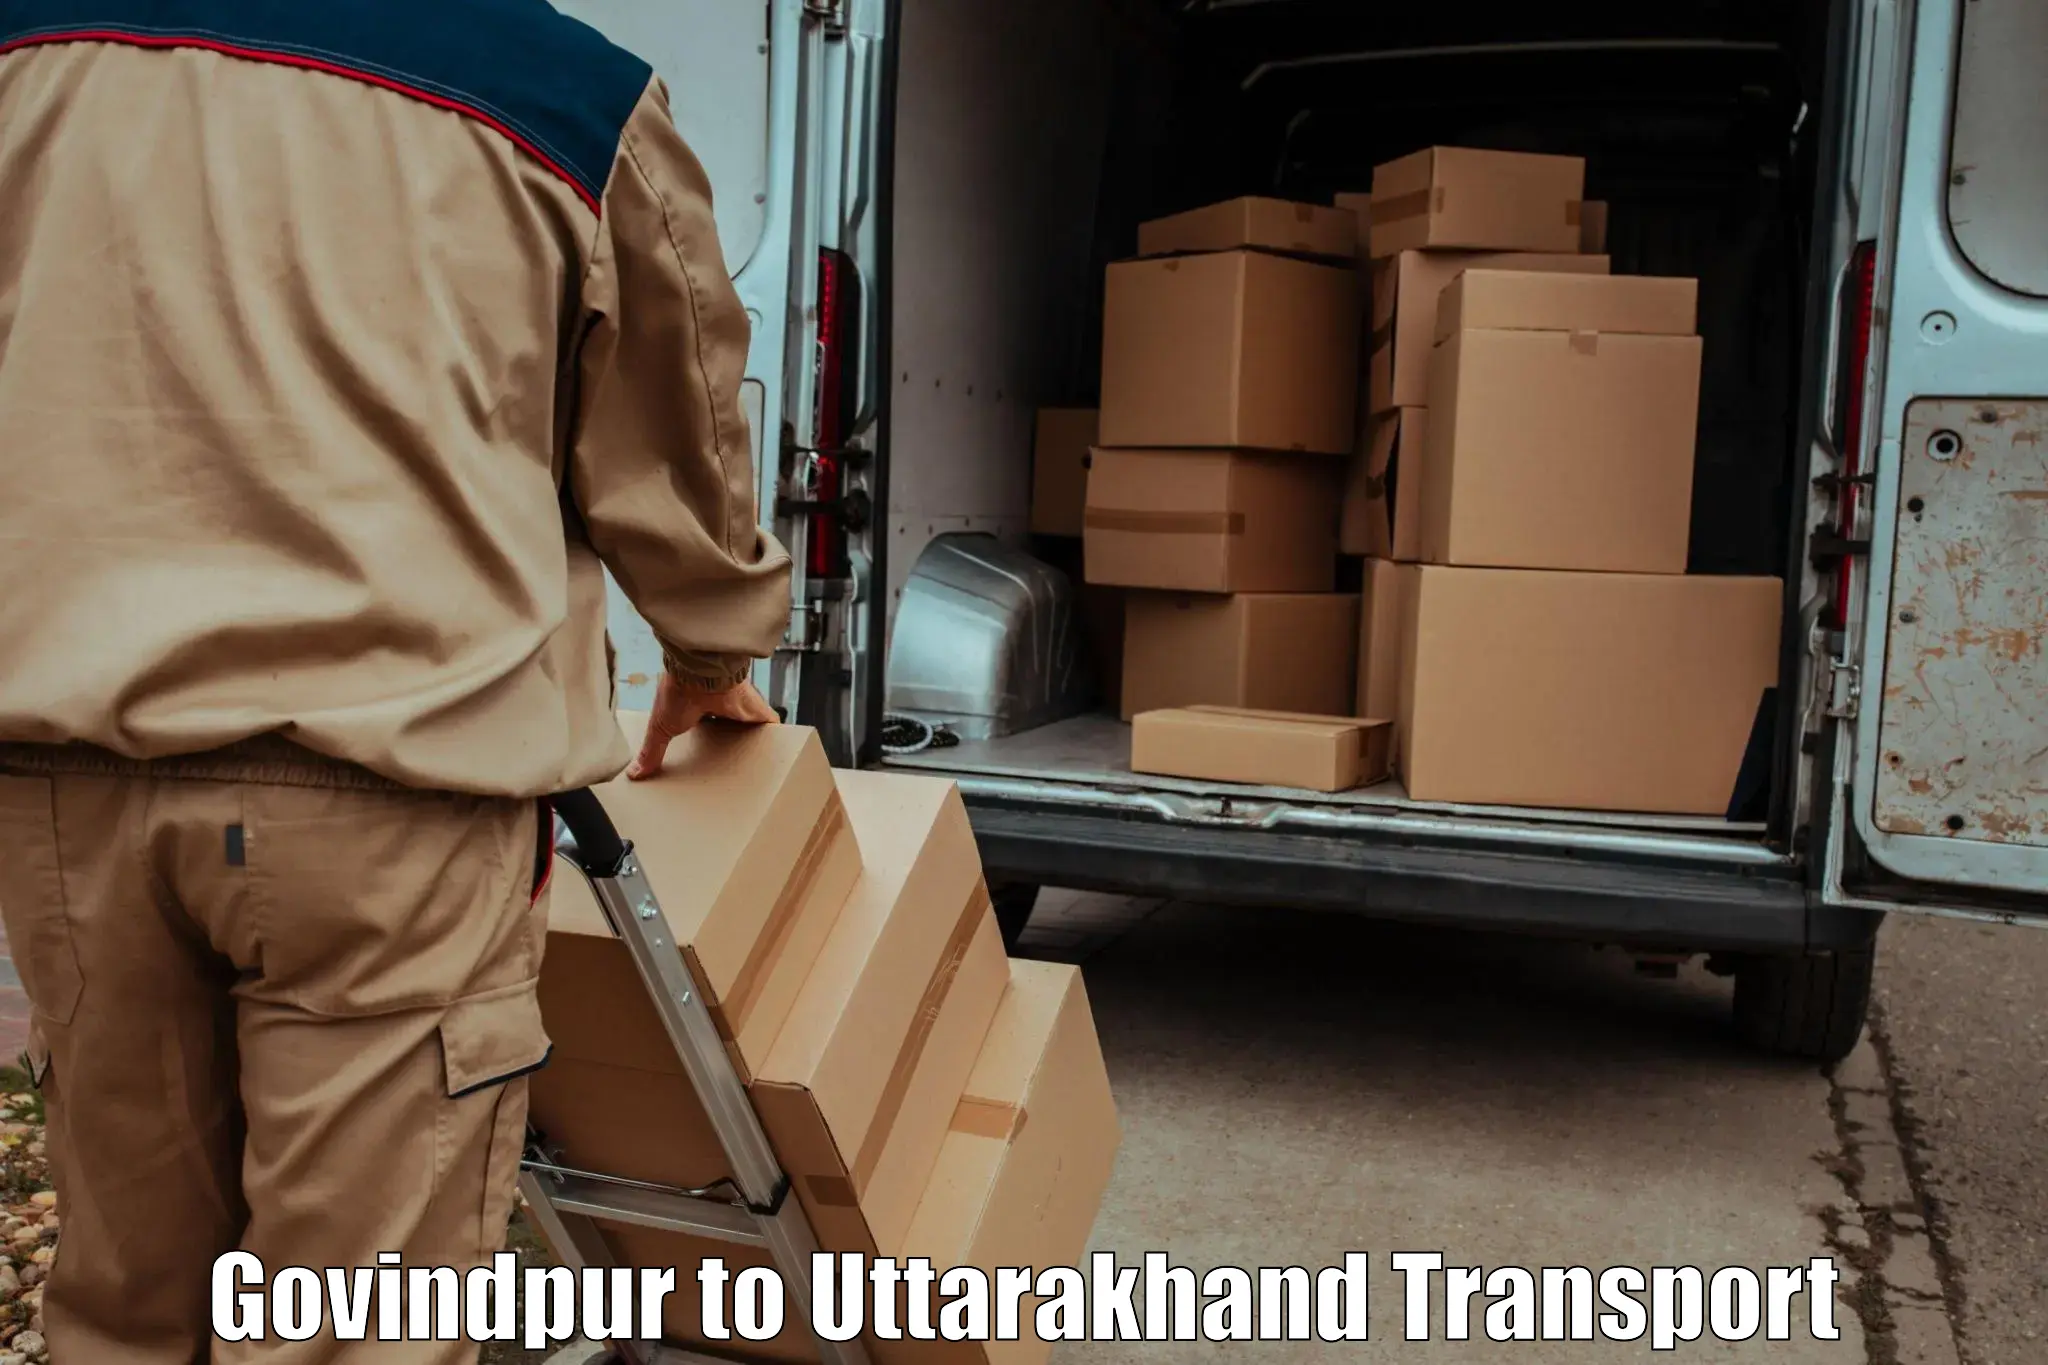 Nearest transport service Govindpur to Kotdwara